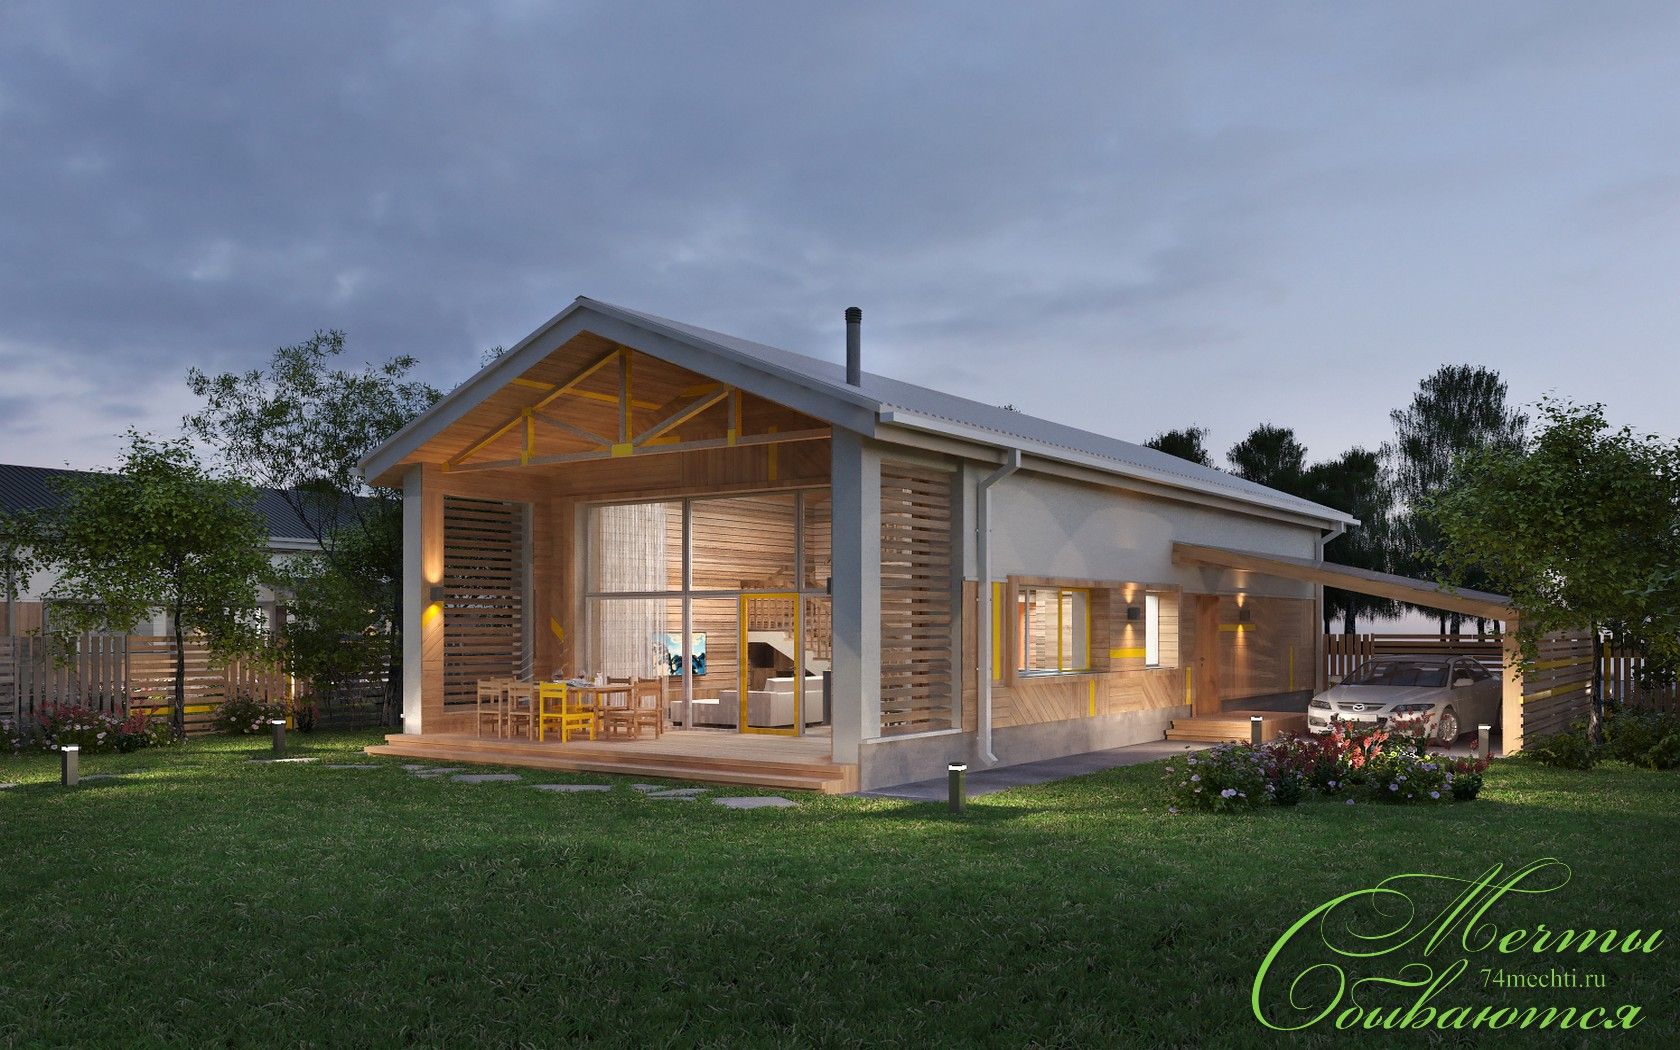 уДАЧный уикэнд, Компания архитекторов Латышевых "Мечты сбываются" Компания архитекторов Латышевых 'Мечты сбываются' Casas de estilo rural